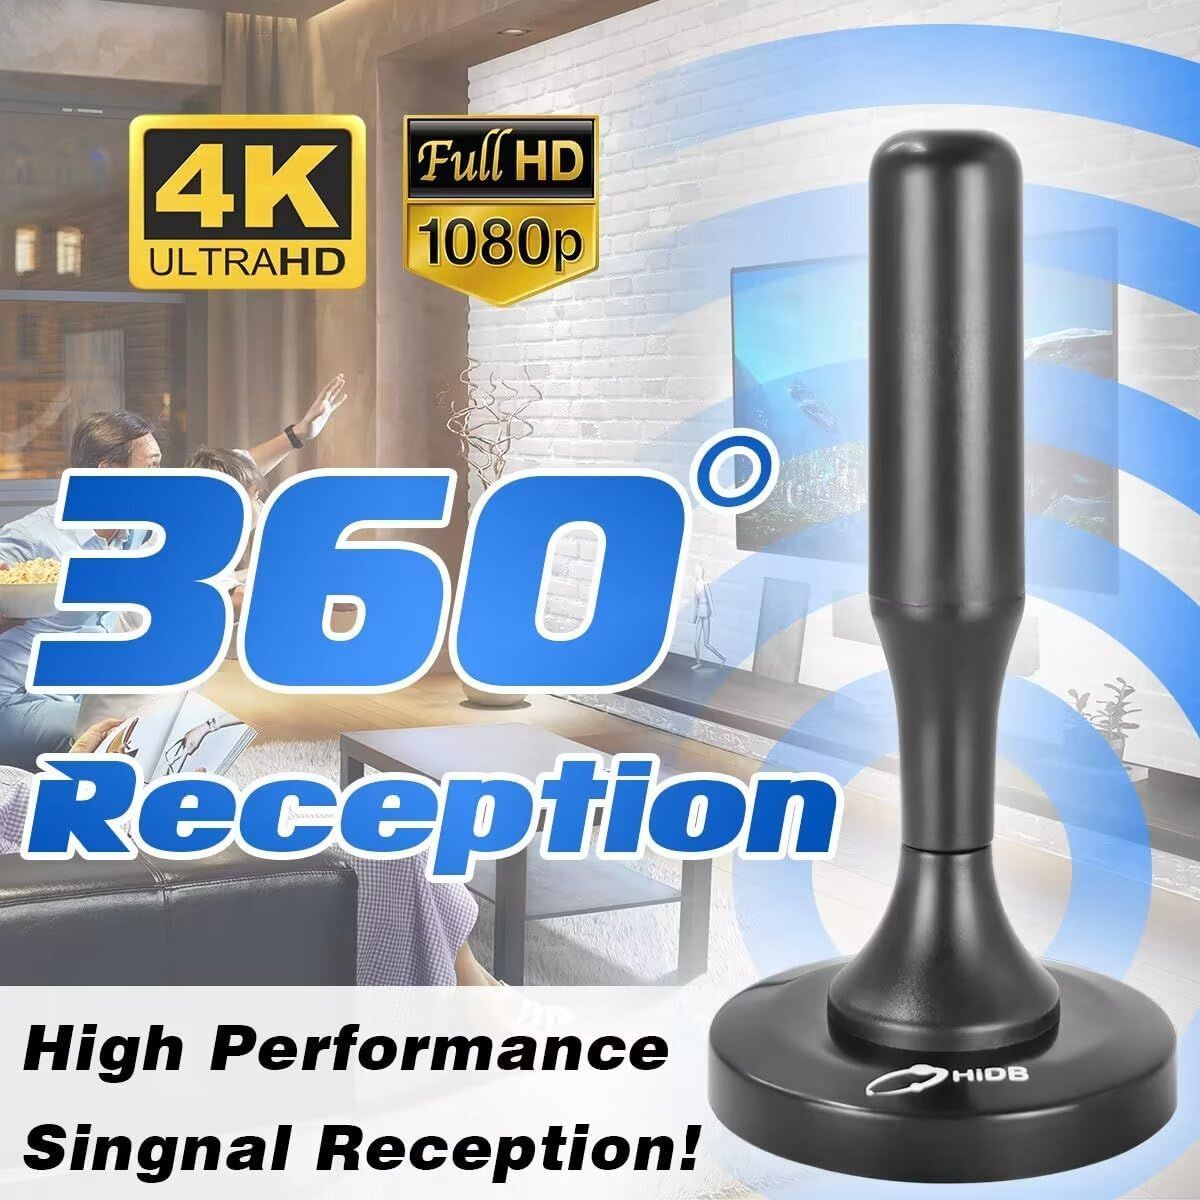 Hidb Antena Telewizyjna Magnetyczna 4K 1080P 360